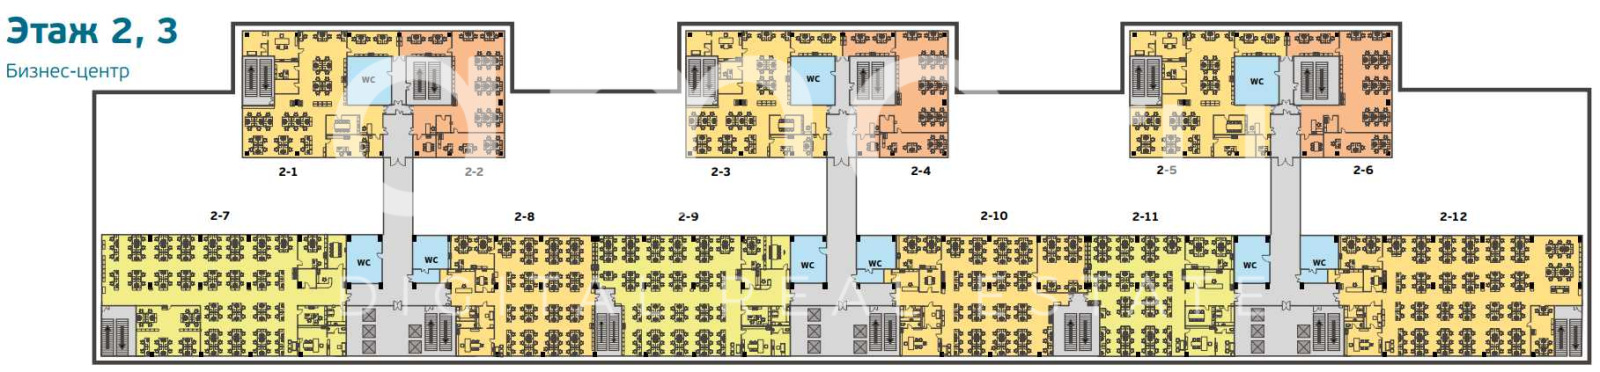 Планировка офиса 3085.7 м², 2 этаж, МФЦ «Амальтея»